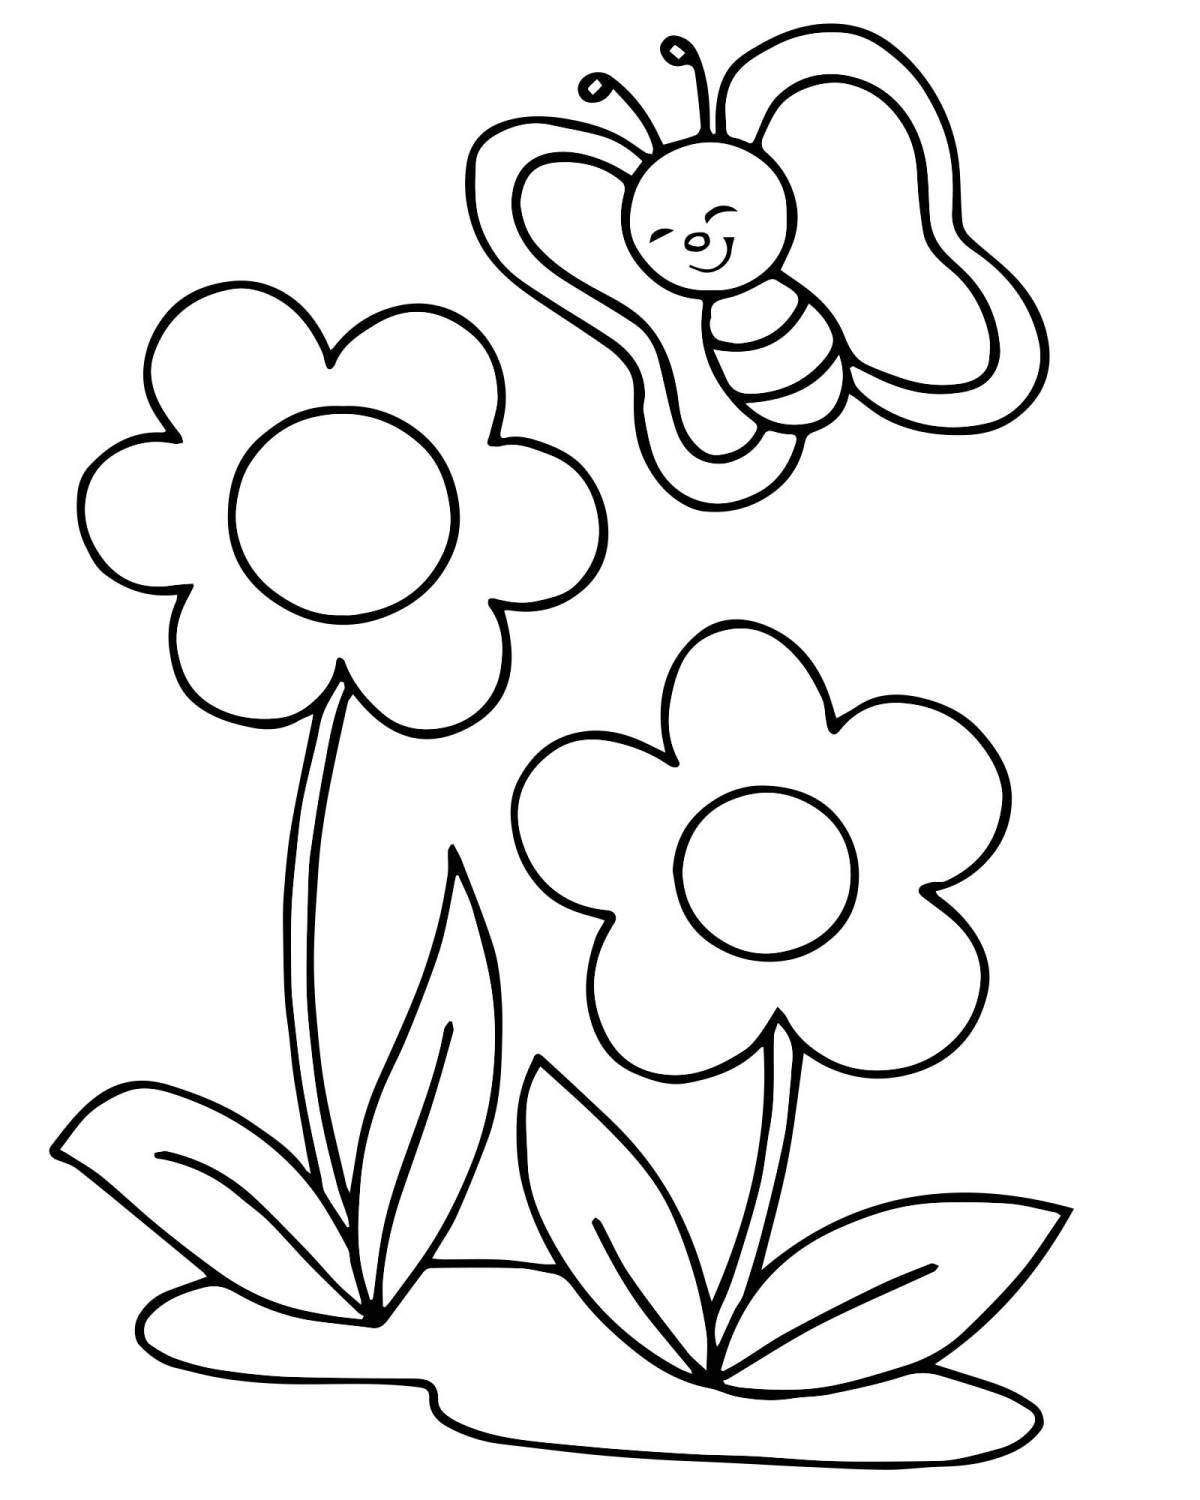 Лучистая раскраска цветок для детей 2-3 лет